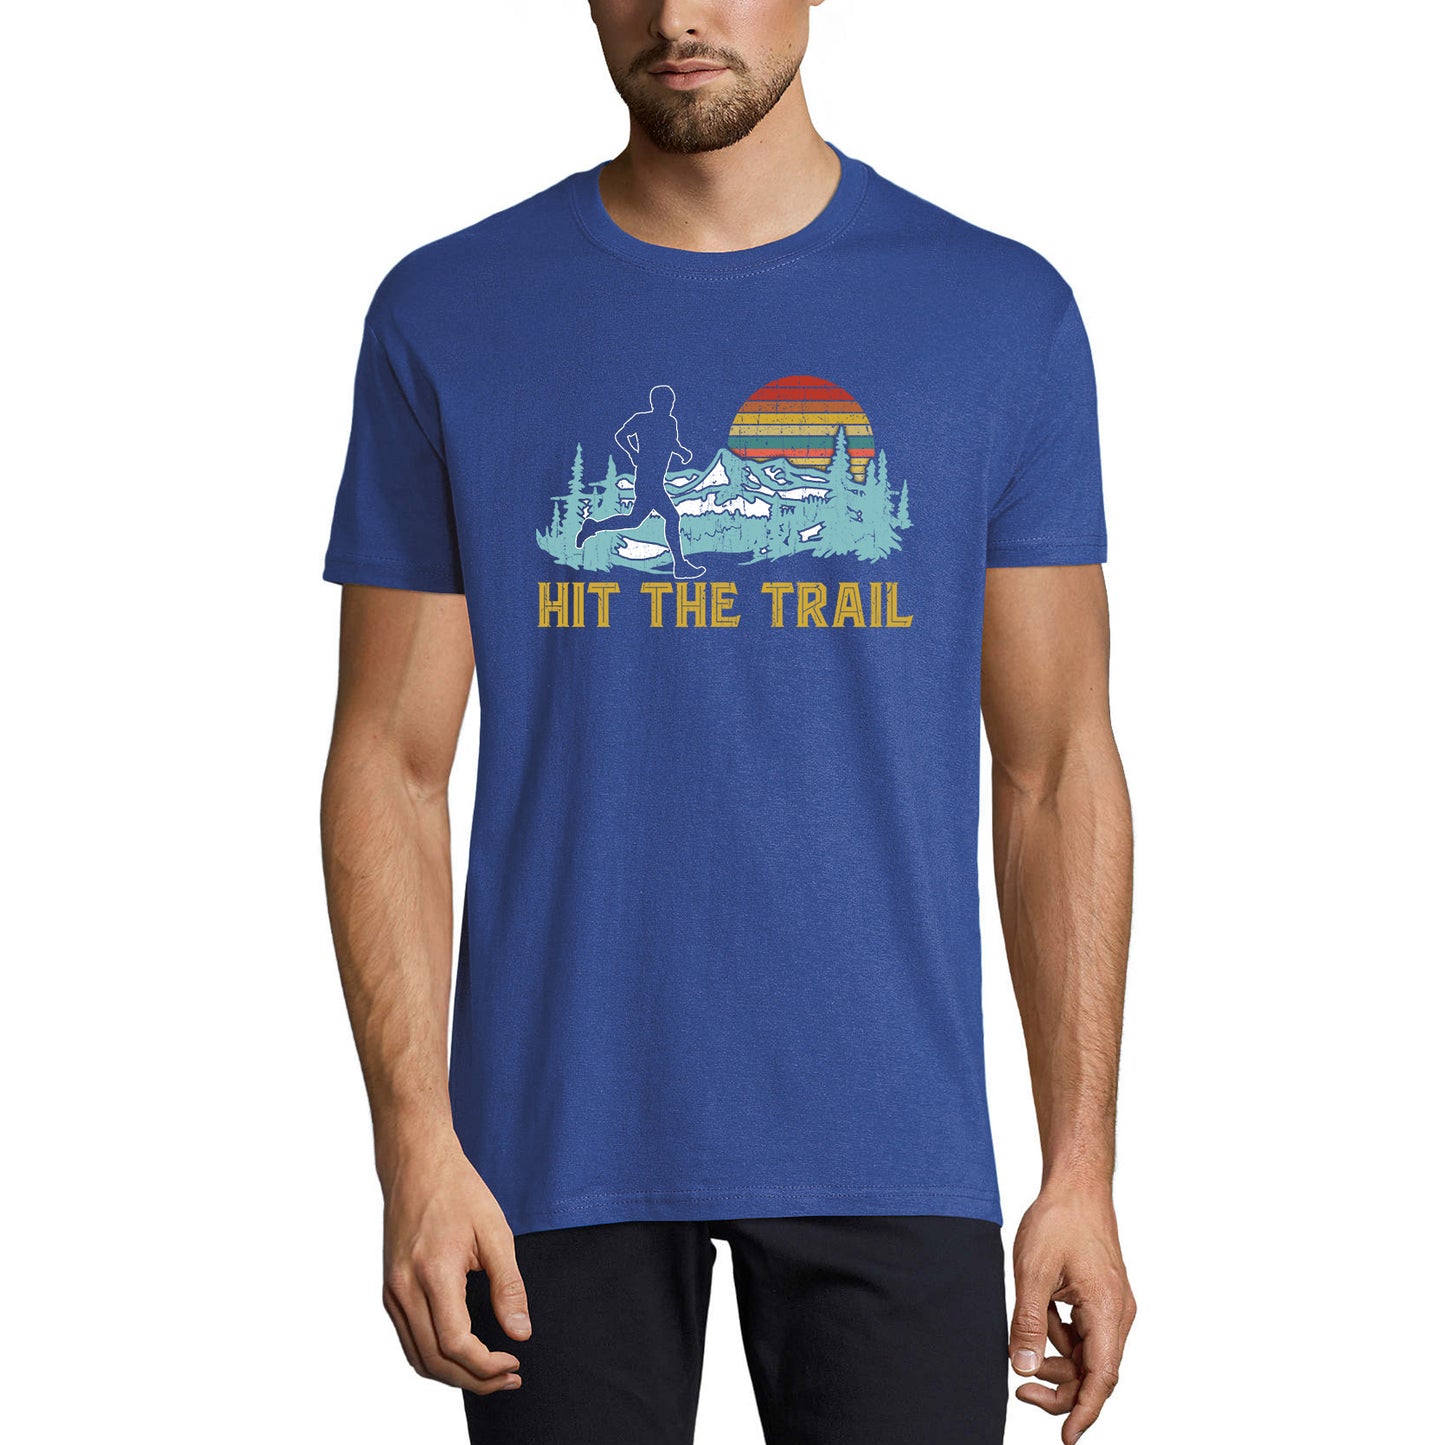 ULTRABASIC Men's Novelty T-Shirt Hit the Trail - Funny Runner Tee Shirt